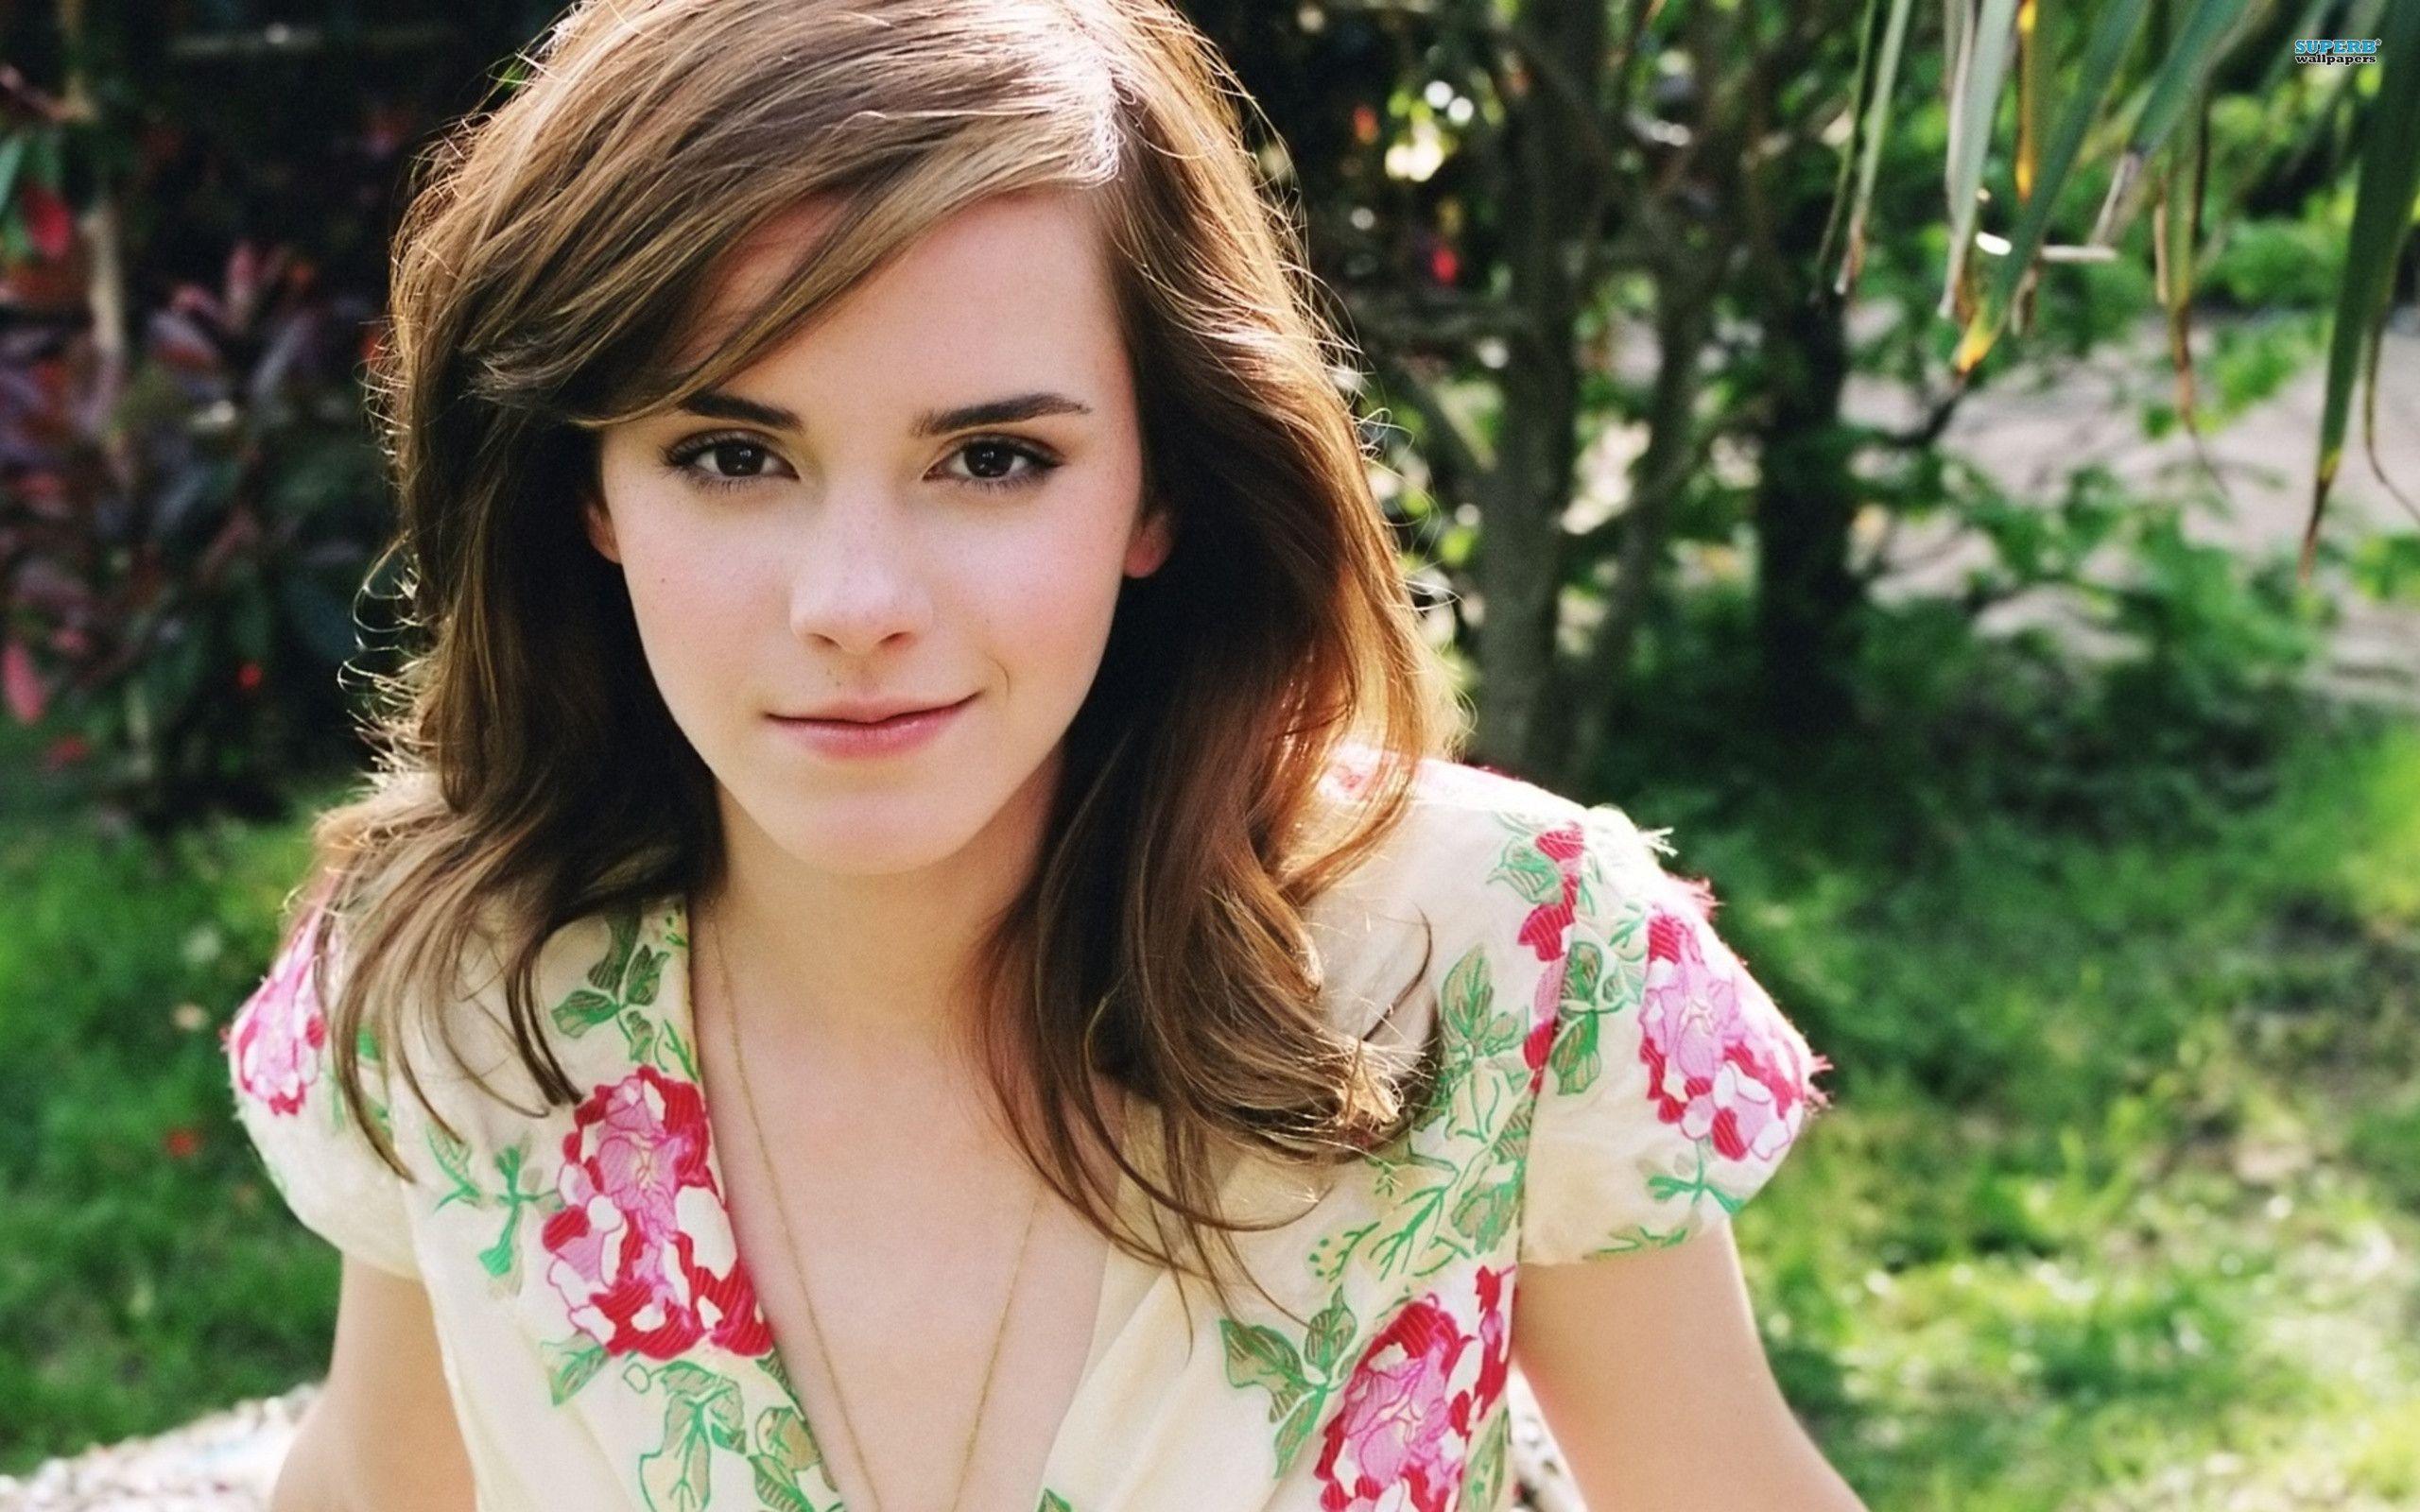 Fonds d&;écran Emma Watson, tous les wallpaper Emma Watson